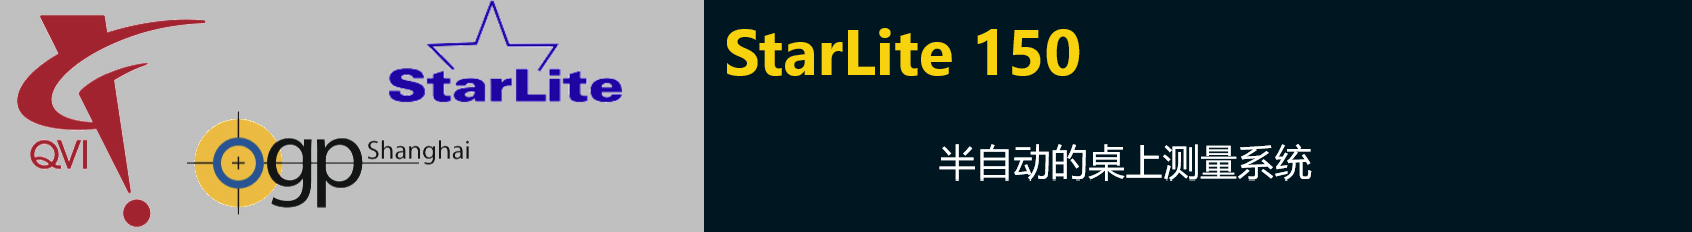 StarLite 150半自動的桌上測量系統